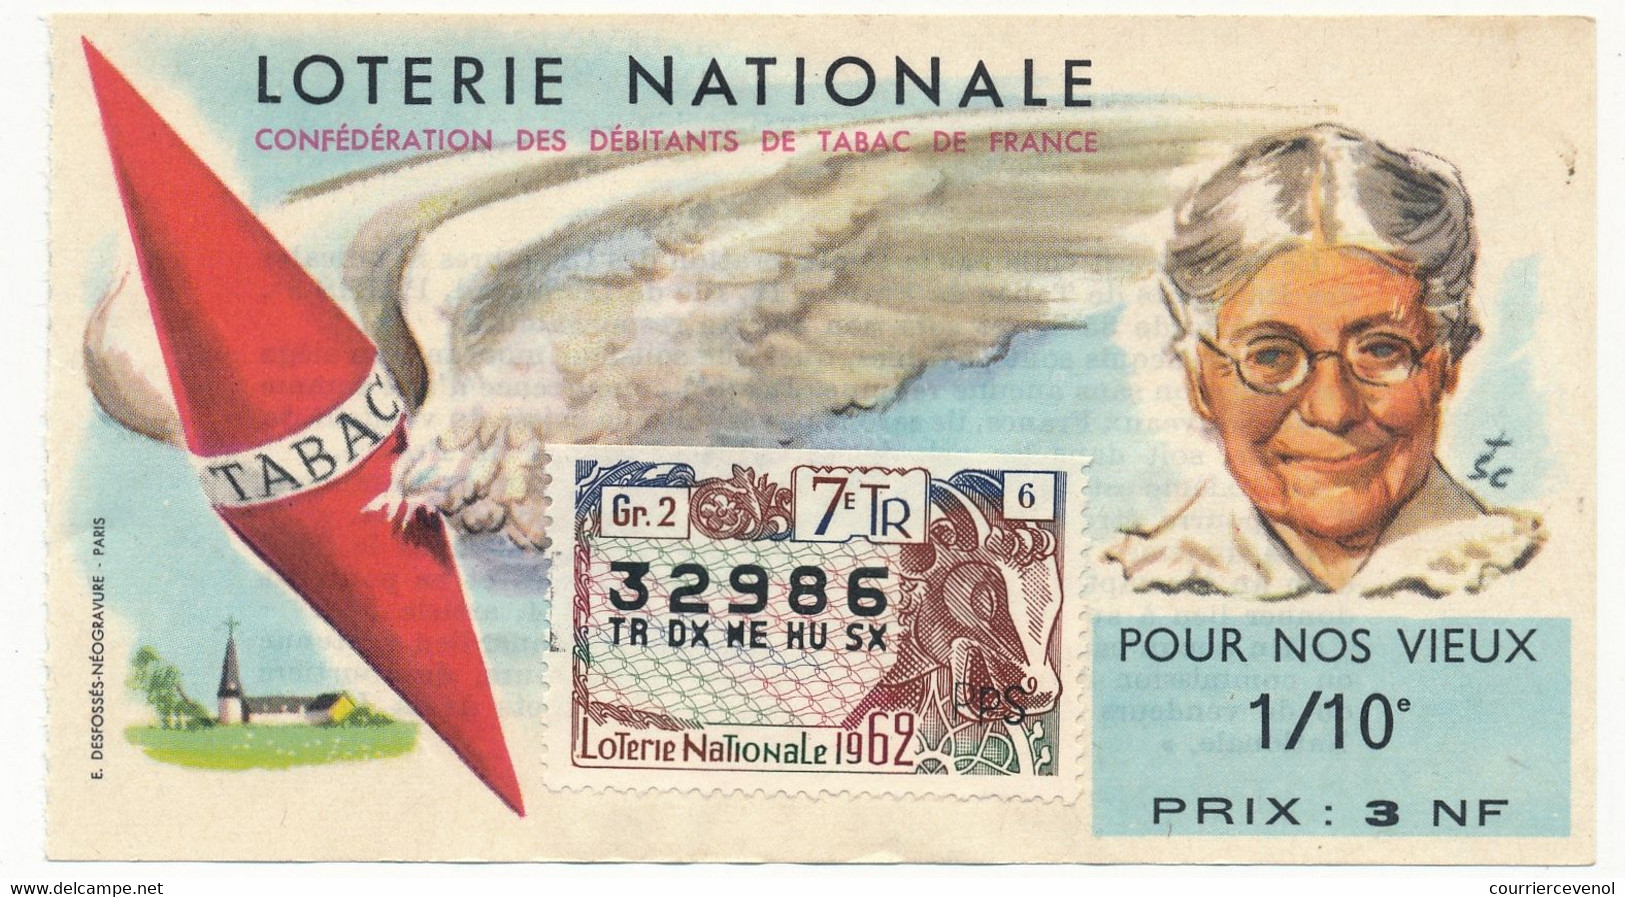 FRANCE - Loterie Nationale - 1/10ème "Pour Nos Vieux" - 3 Nouveaux Francs - Lotterielose